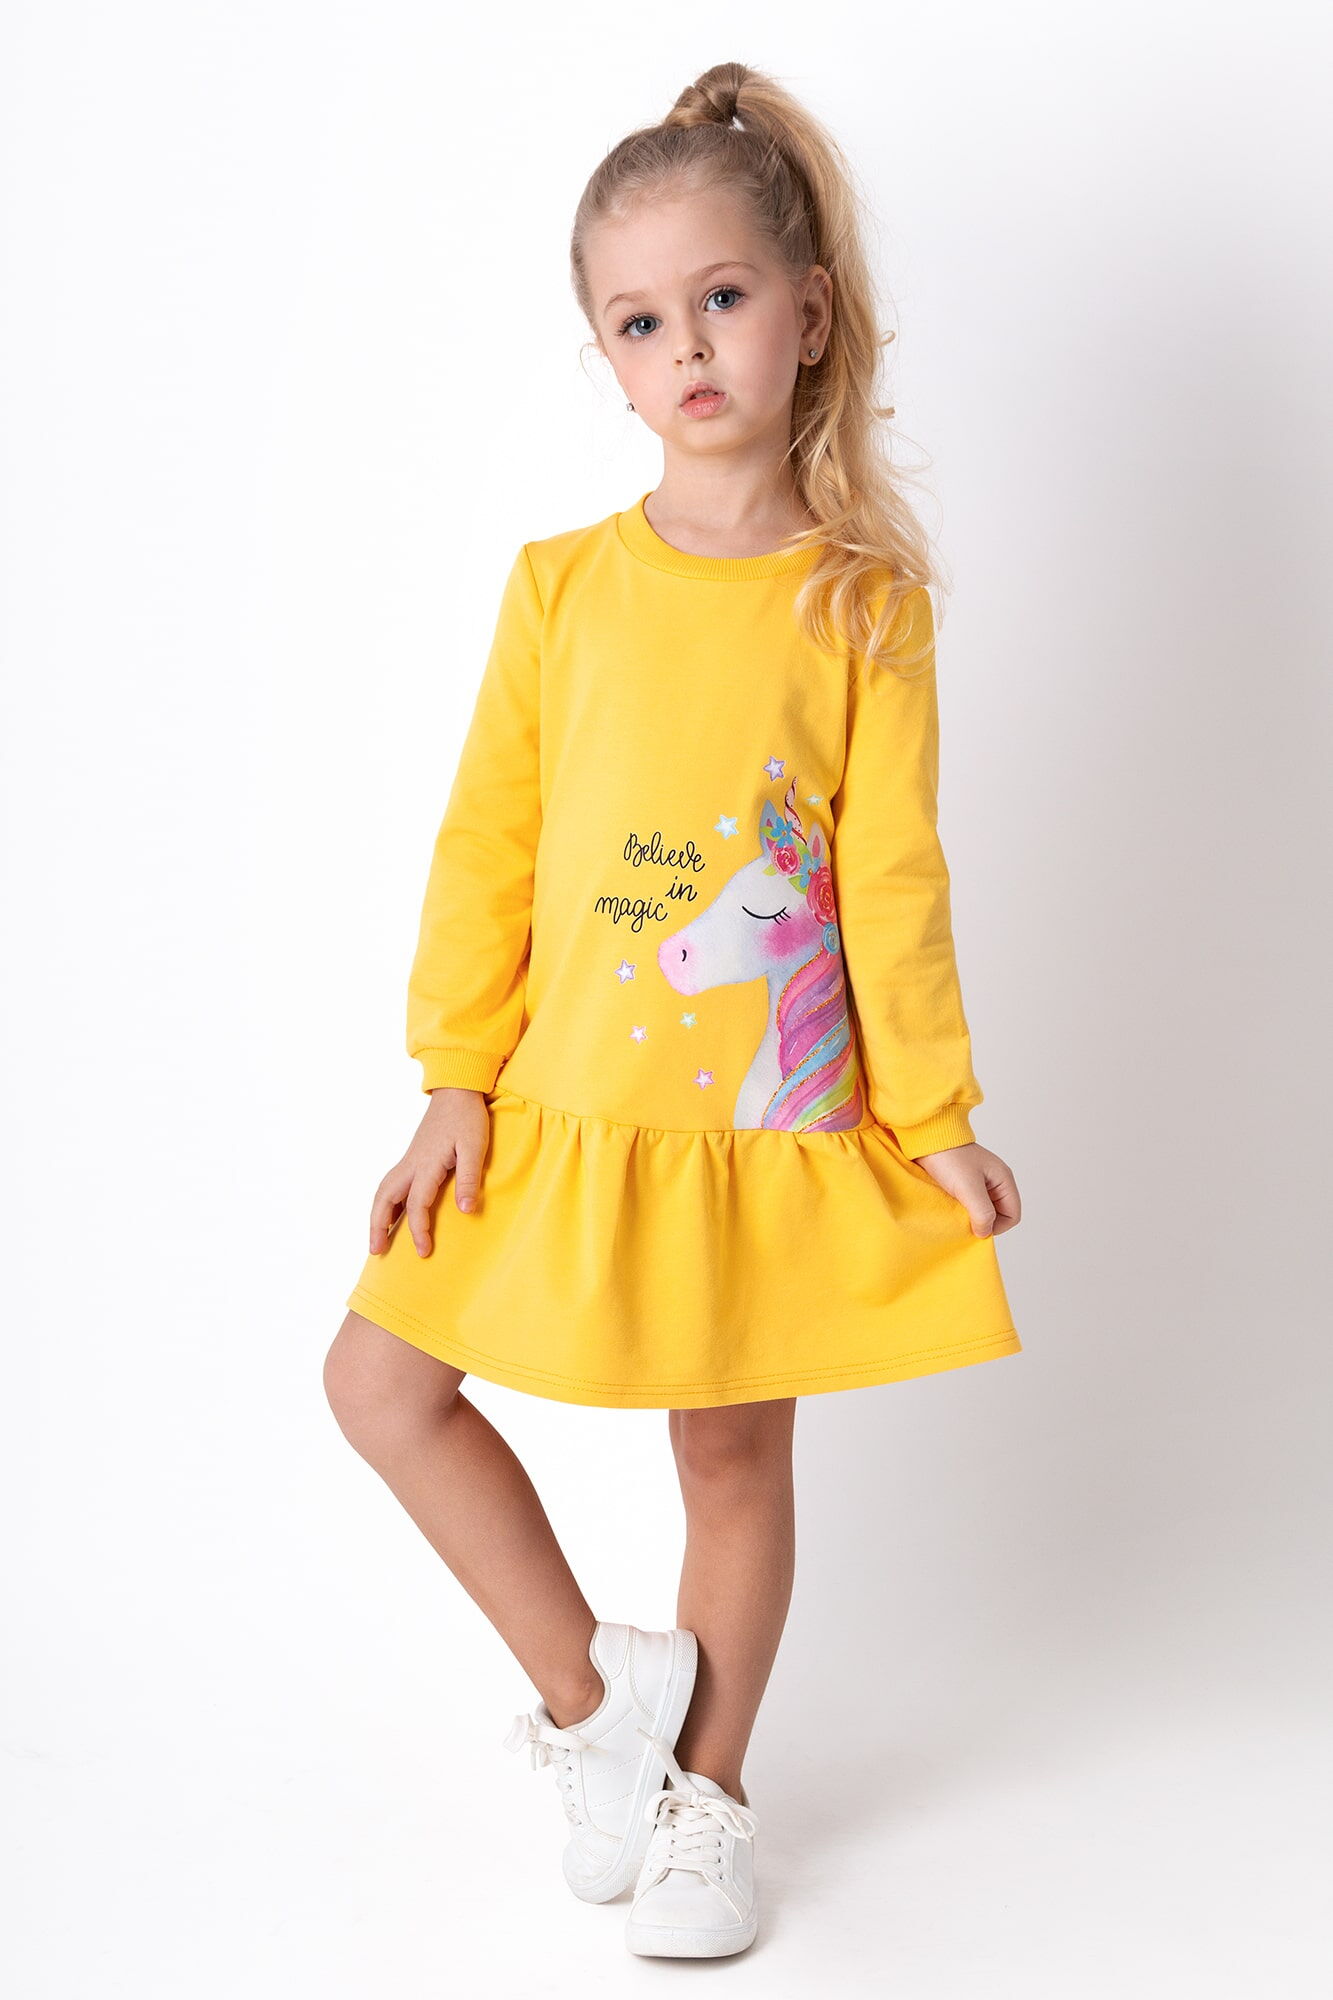 Трикотажное платье для девочки Mevis Единорог желтое 4301-03 - цена